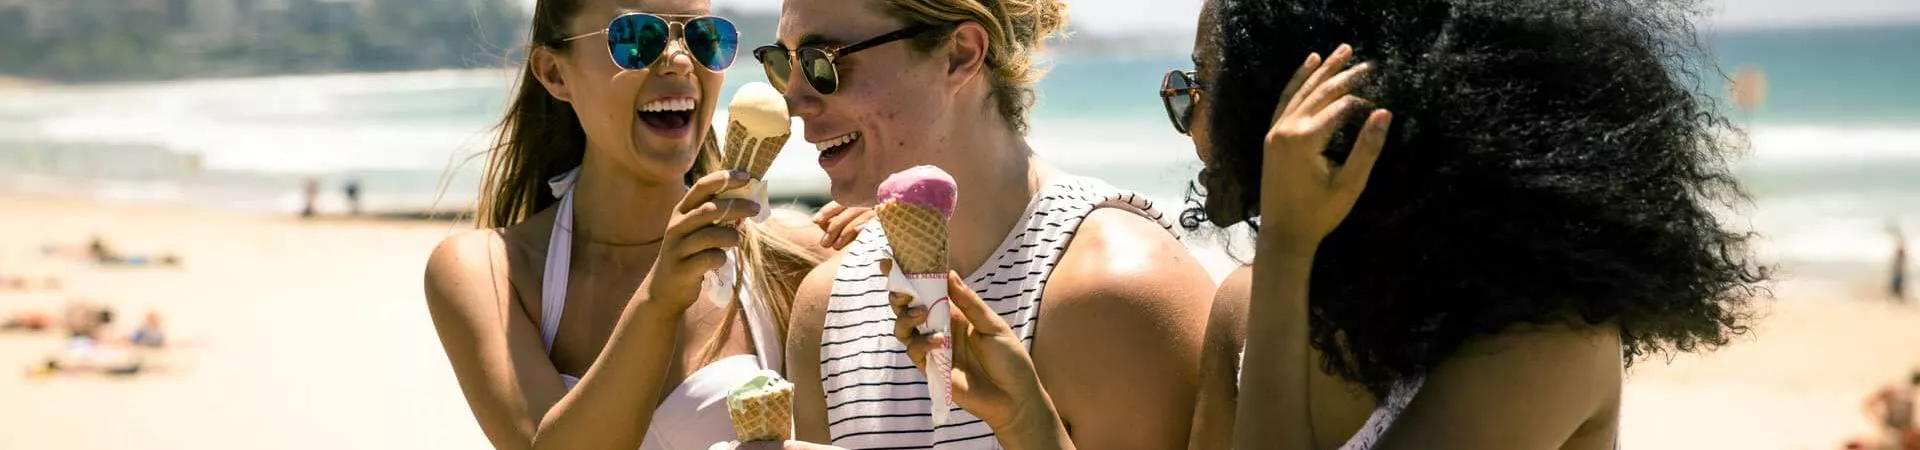 Group Near The Beach In Australia Eating Ice Creams 0595AUSD2016